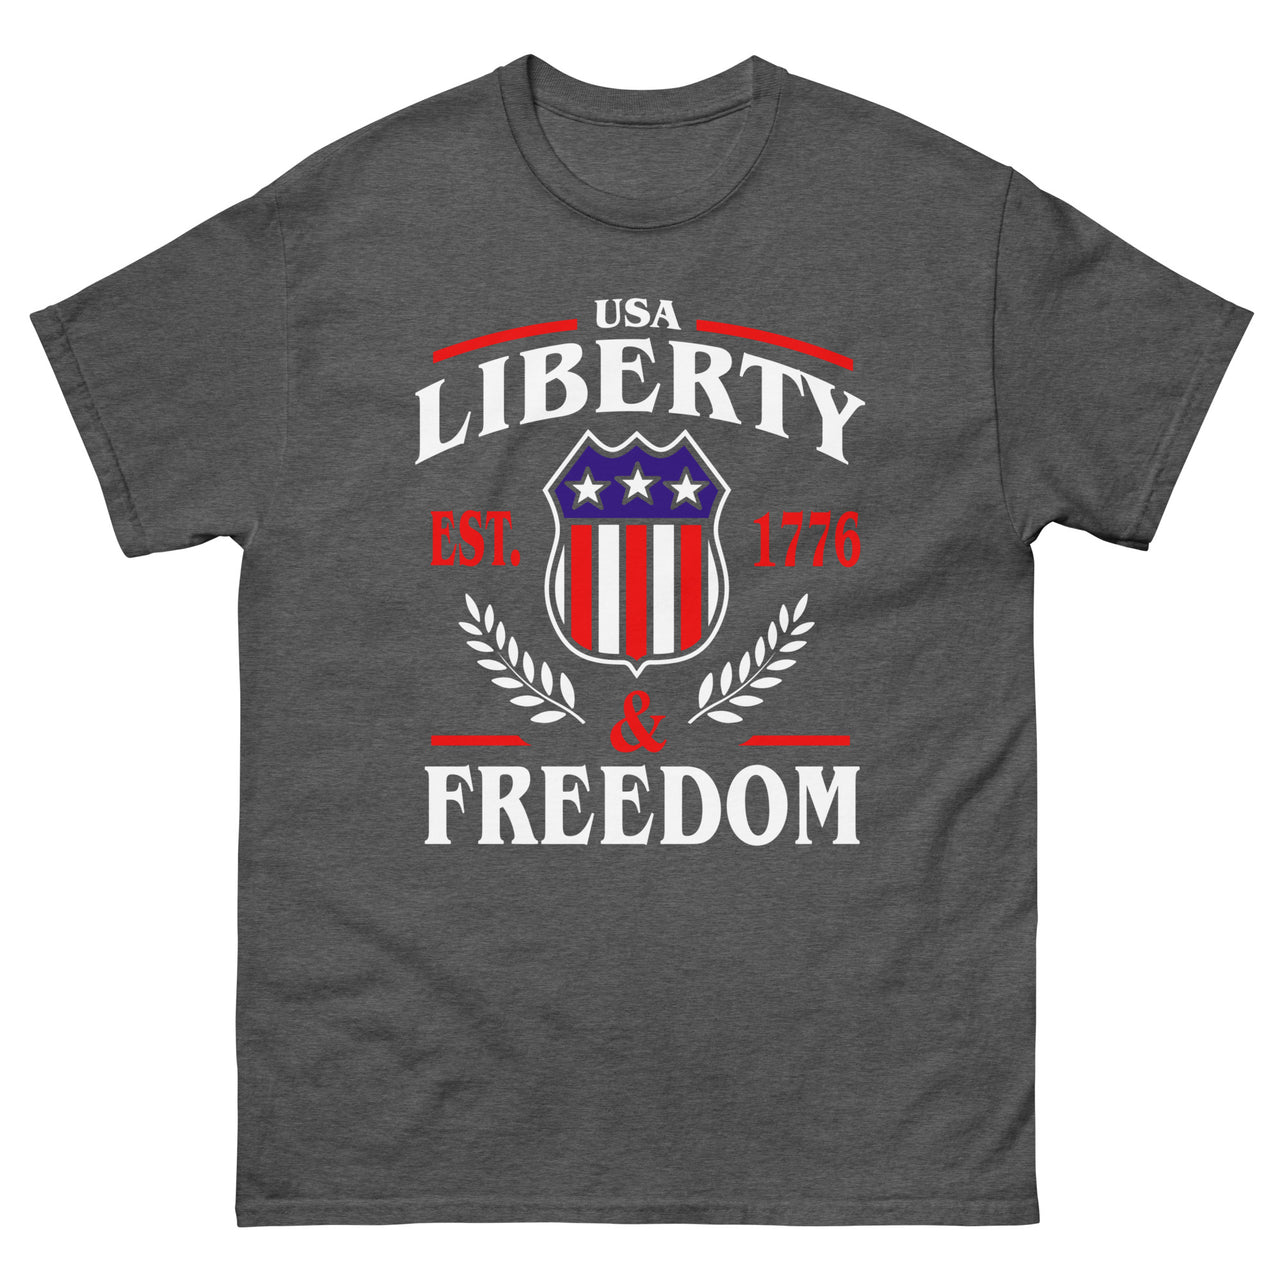 Liberty & Freedom Ver 2 Men's classic tee